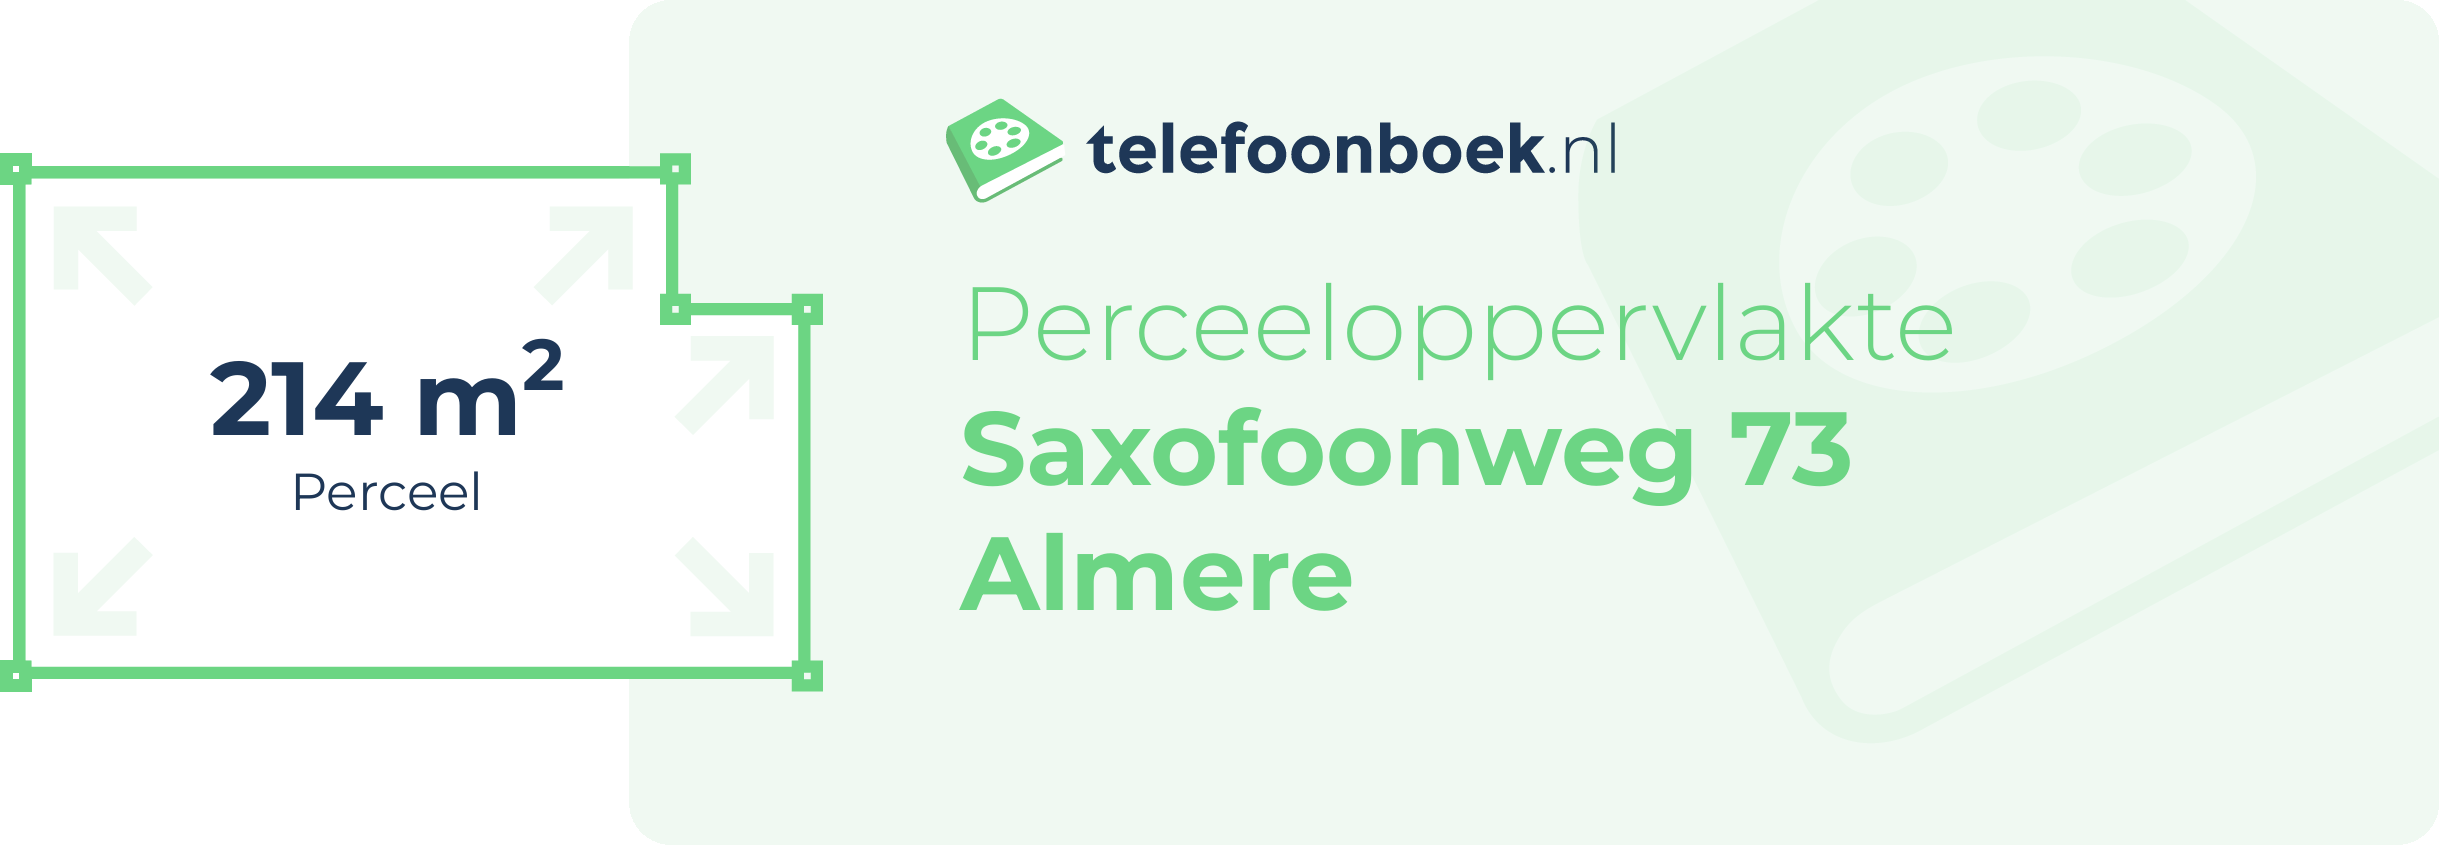 Perceeloppervlakte Saxofoonweg 73 Almere